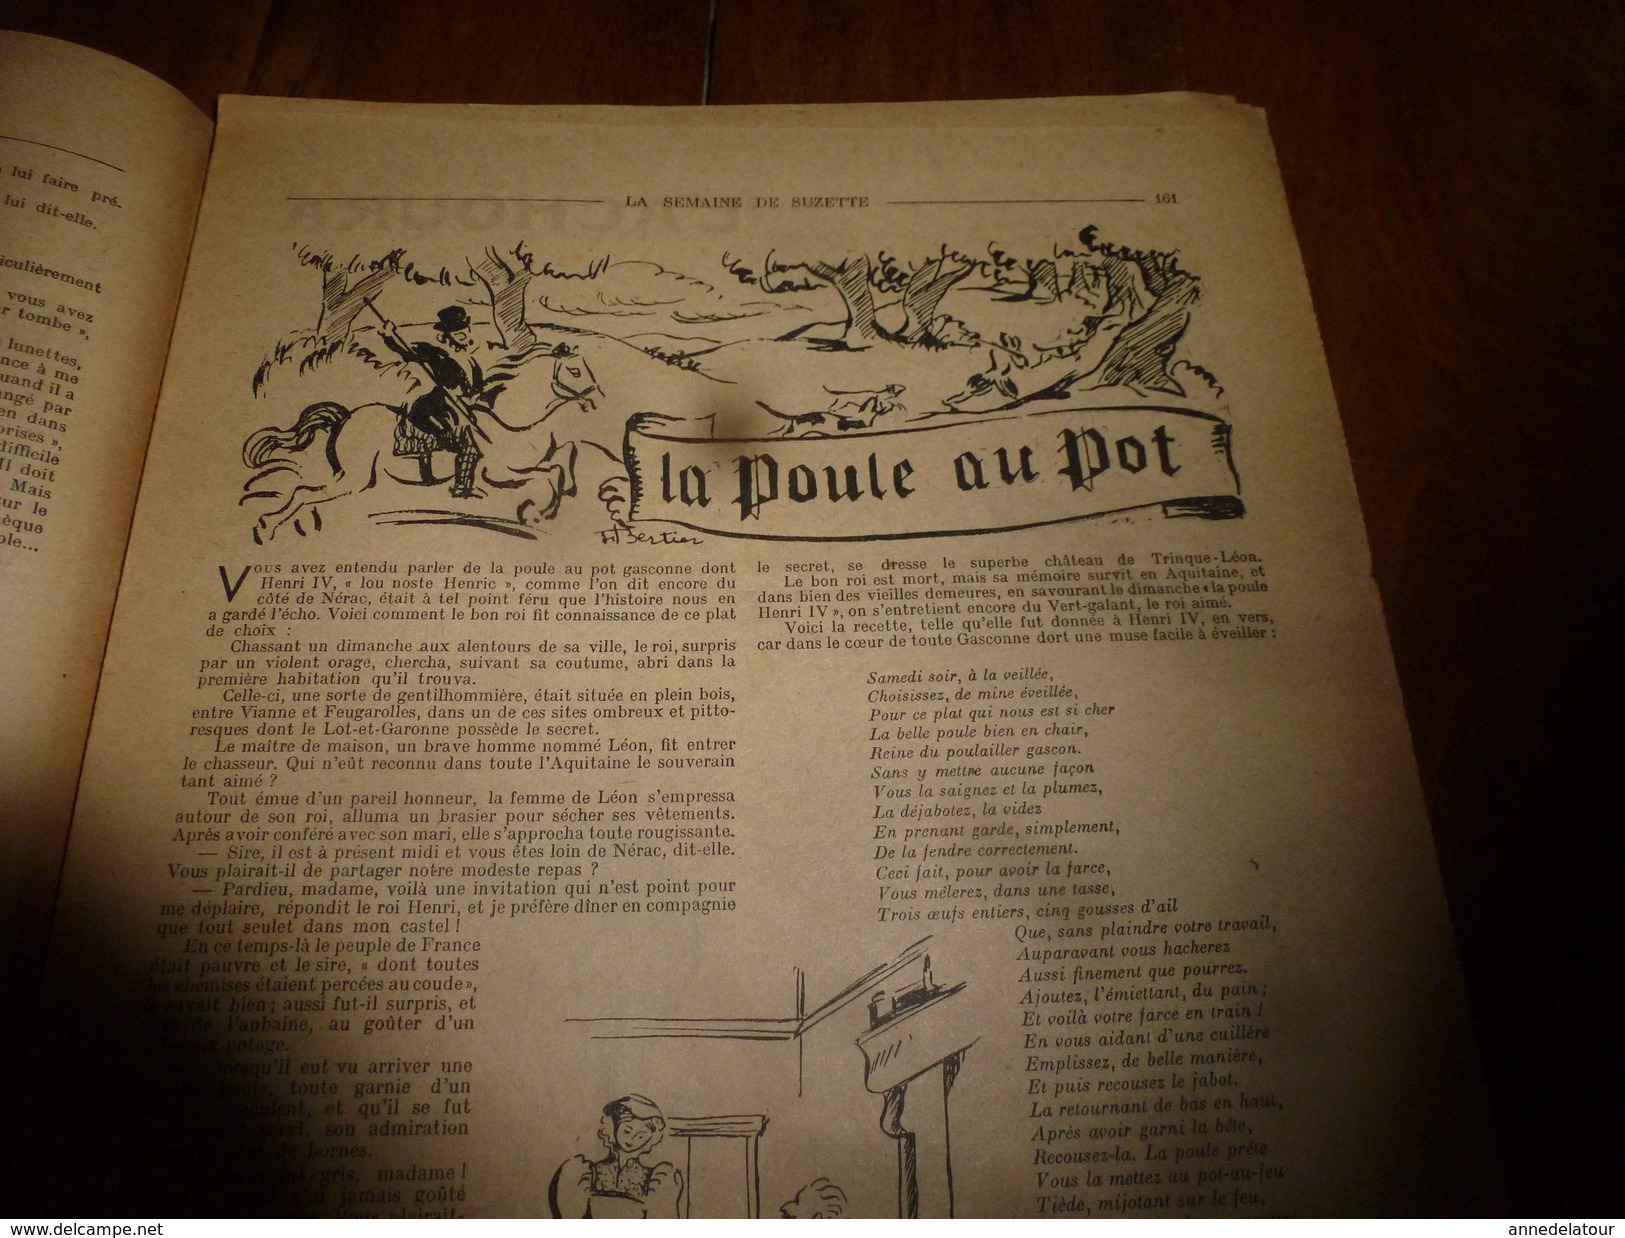 1949 LSDS: L'ACHOURA Du Petit Berger Arabe De La Moulouya ; Etc - La Semaine De Suzette